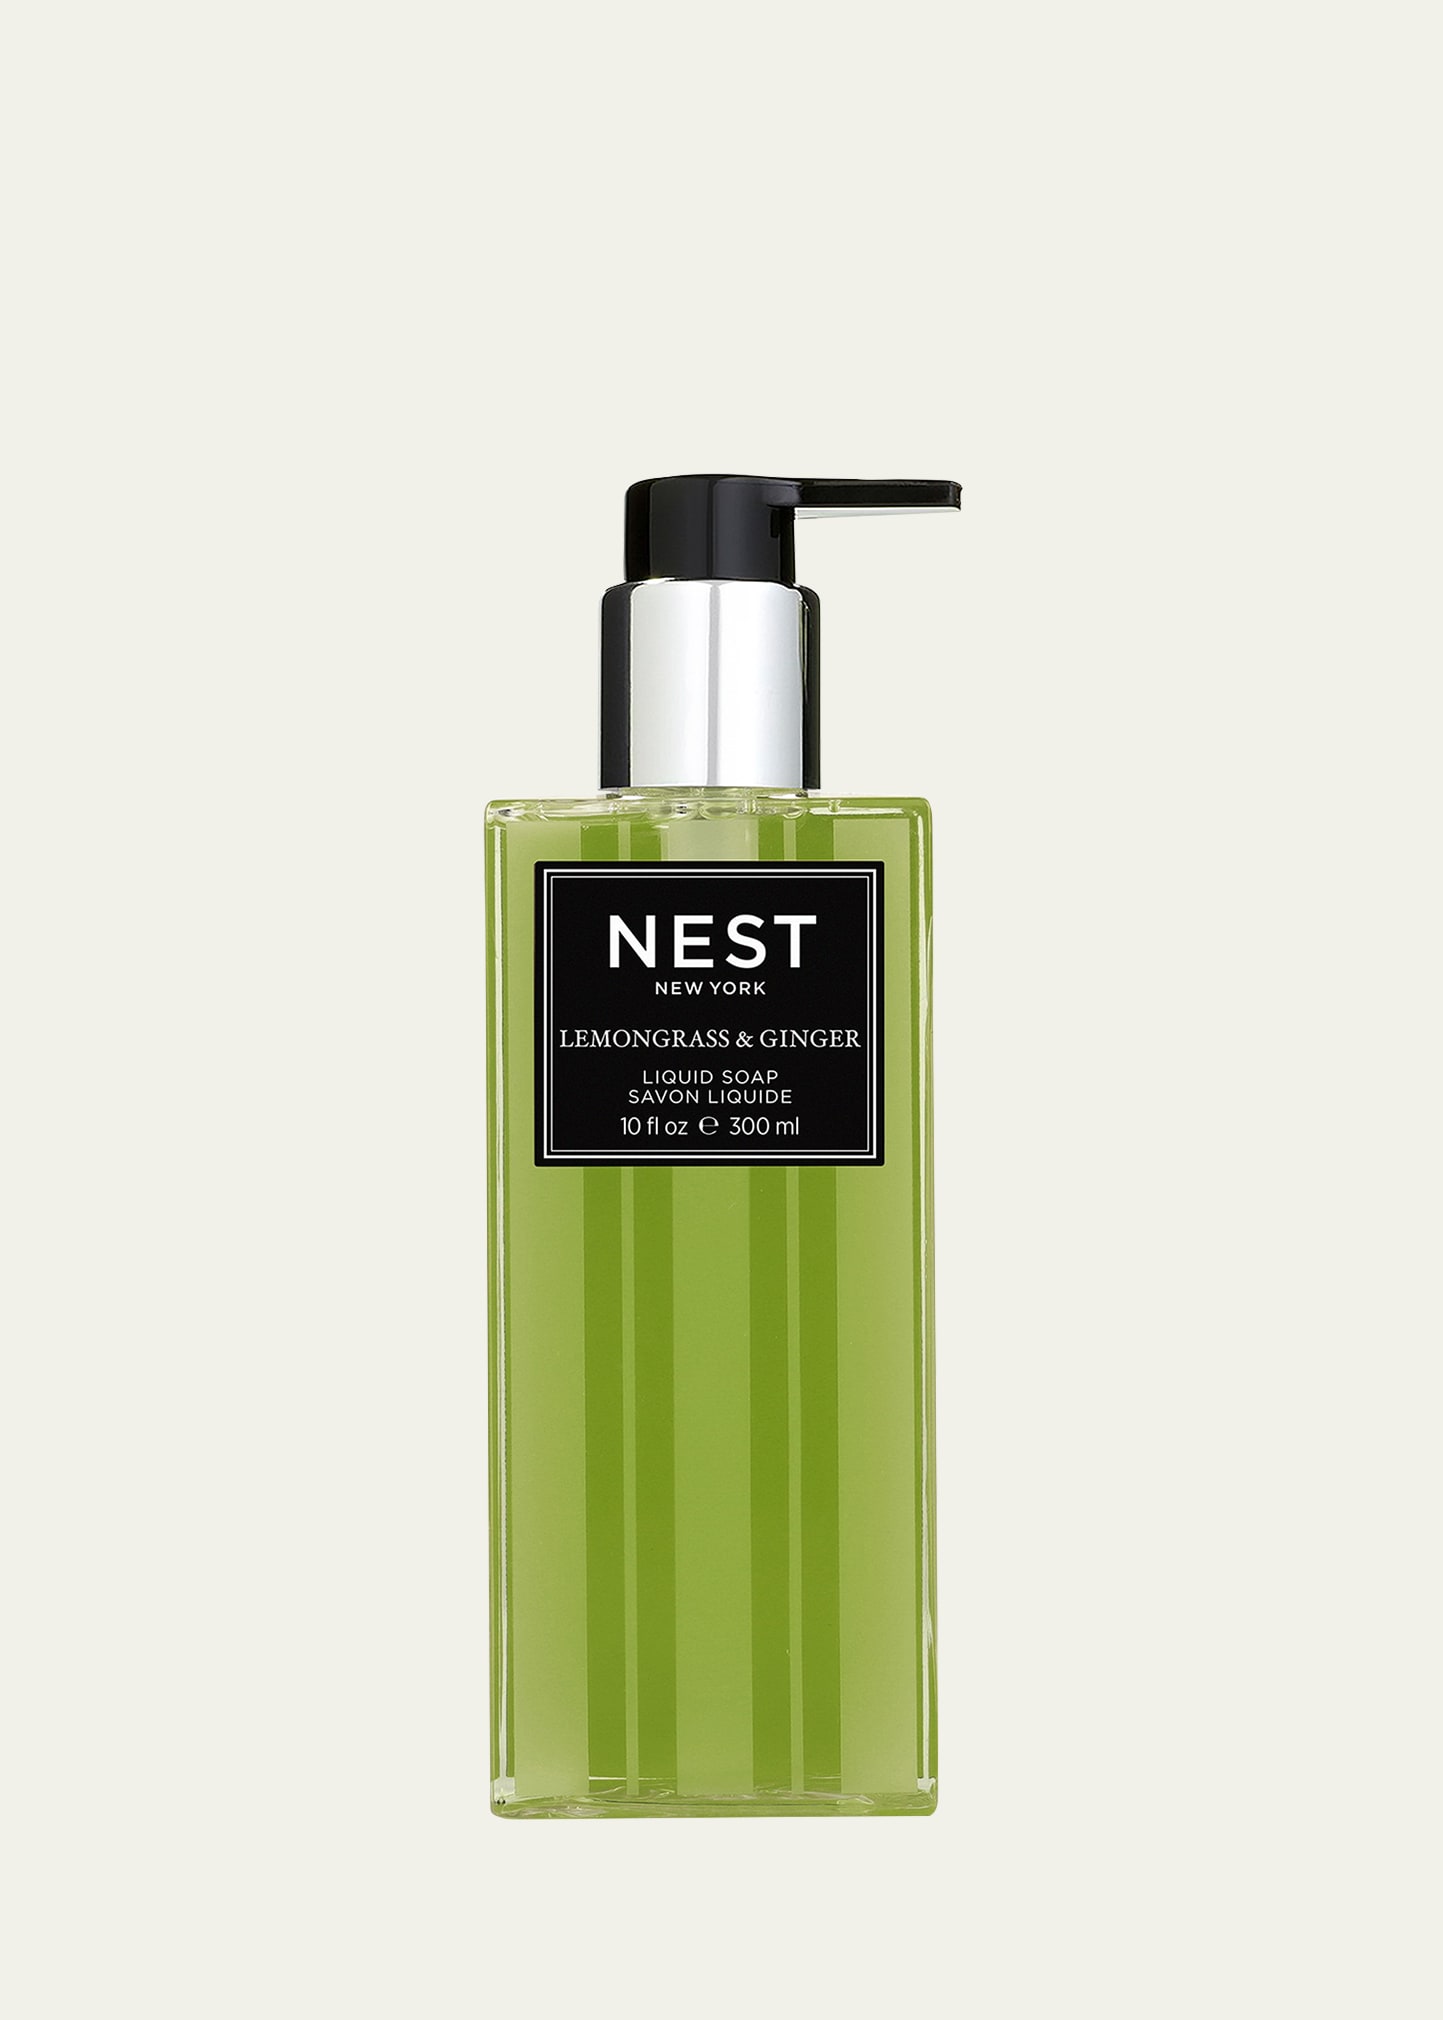 Nest New York Lemongrass & Ginger Liquid Soap, 10 Oz.